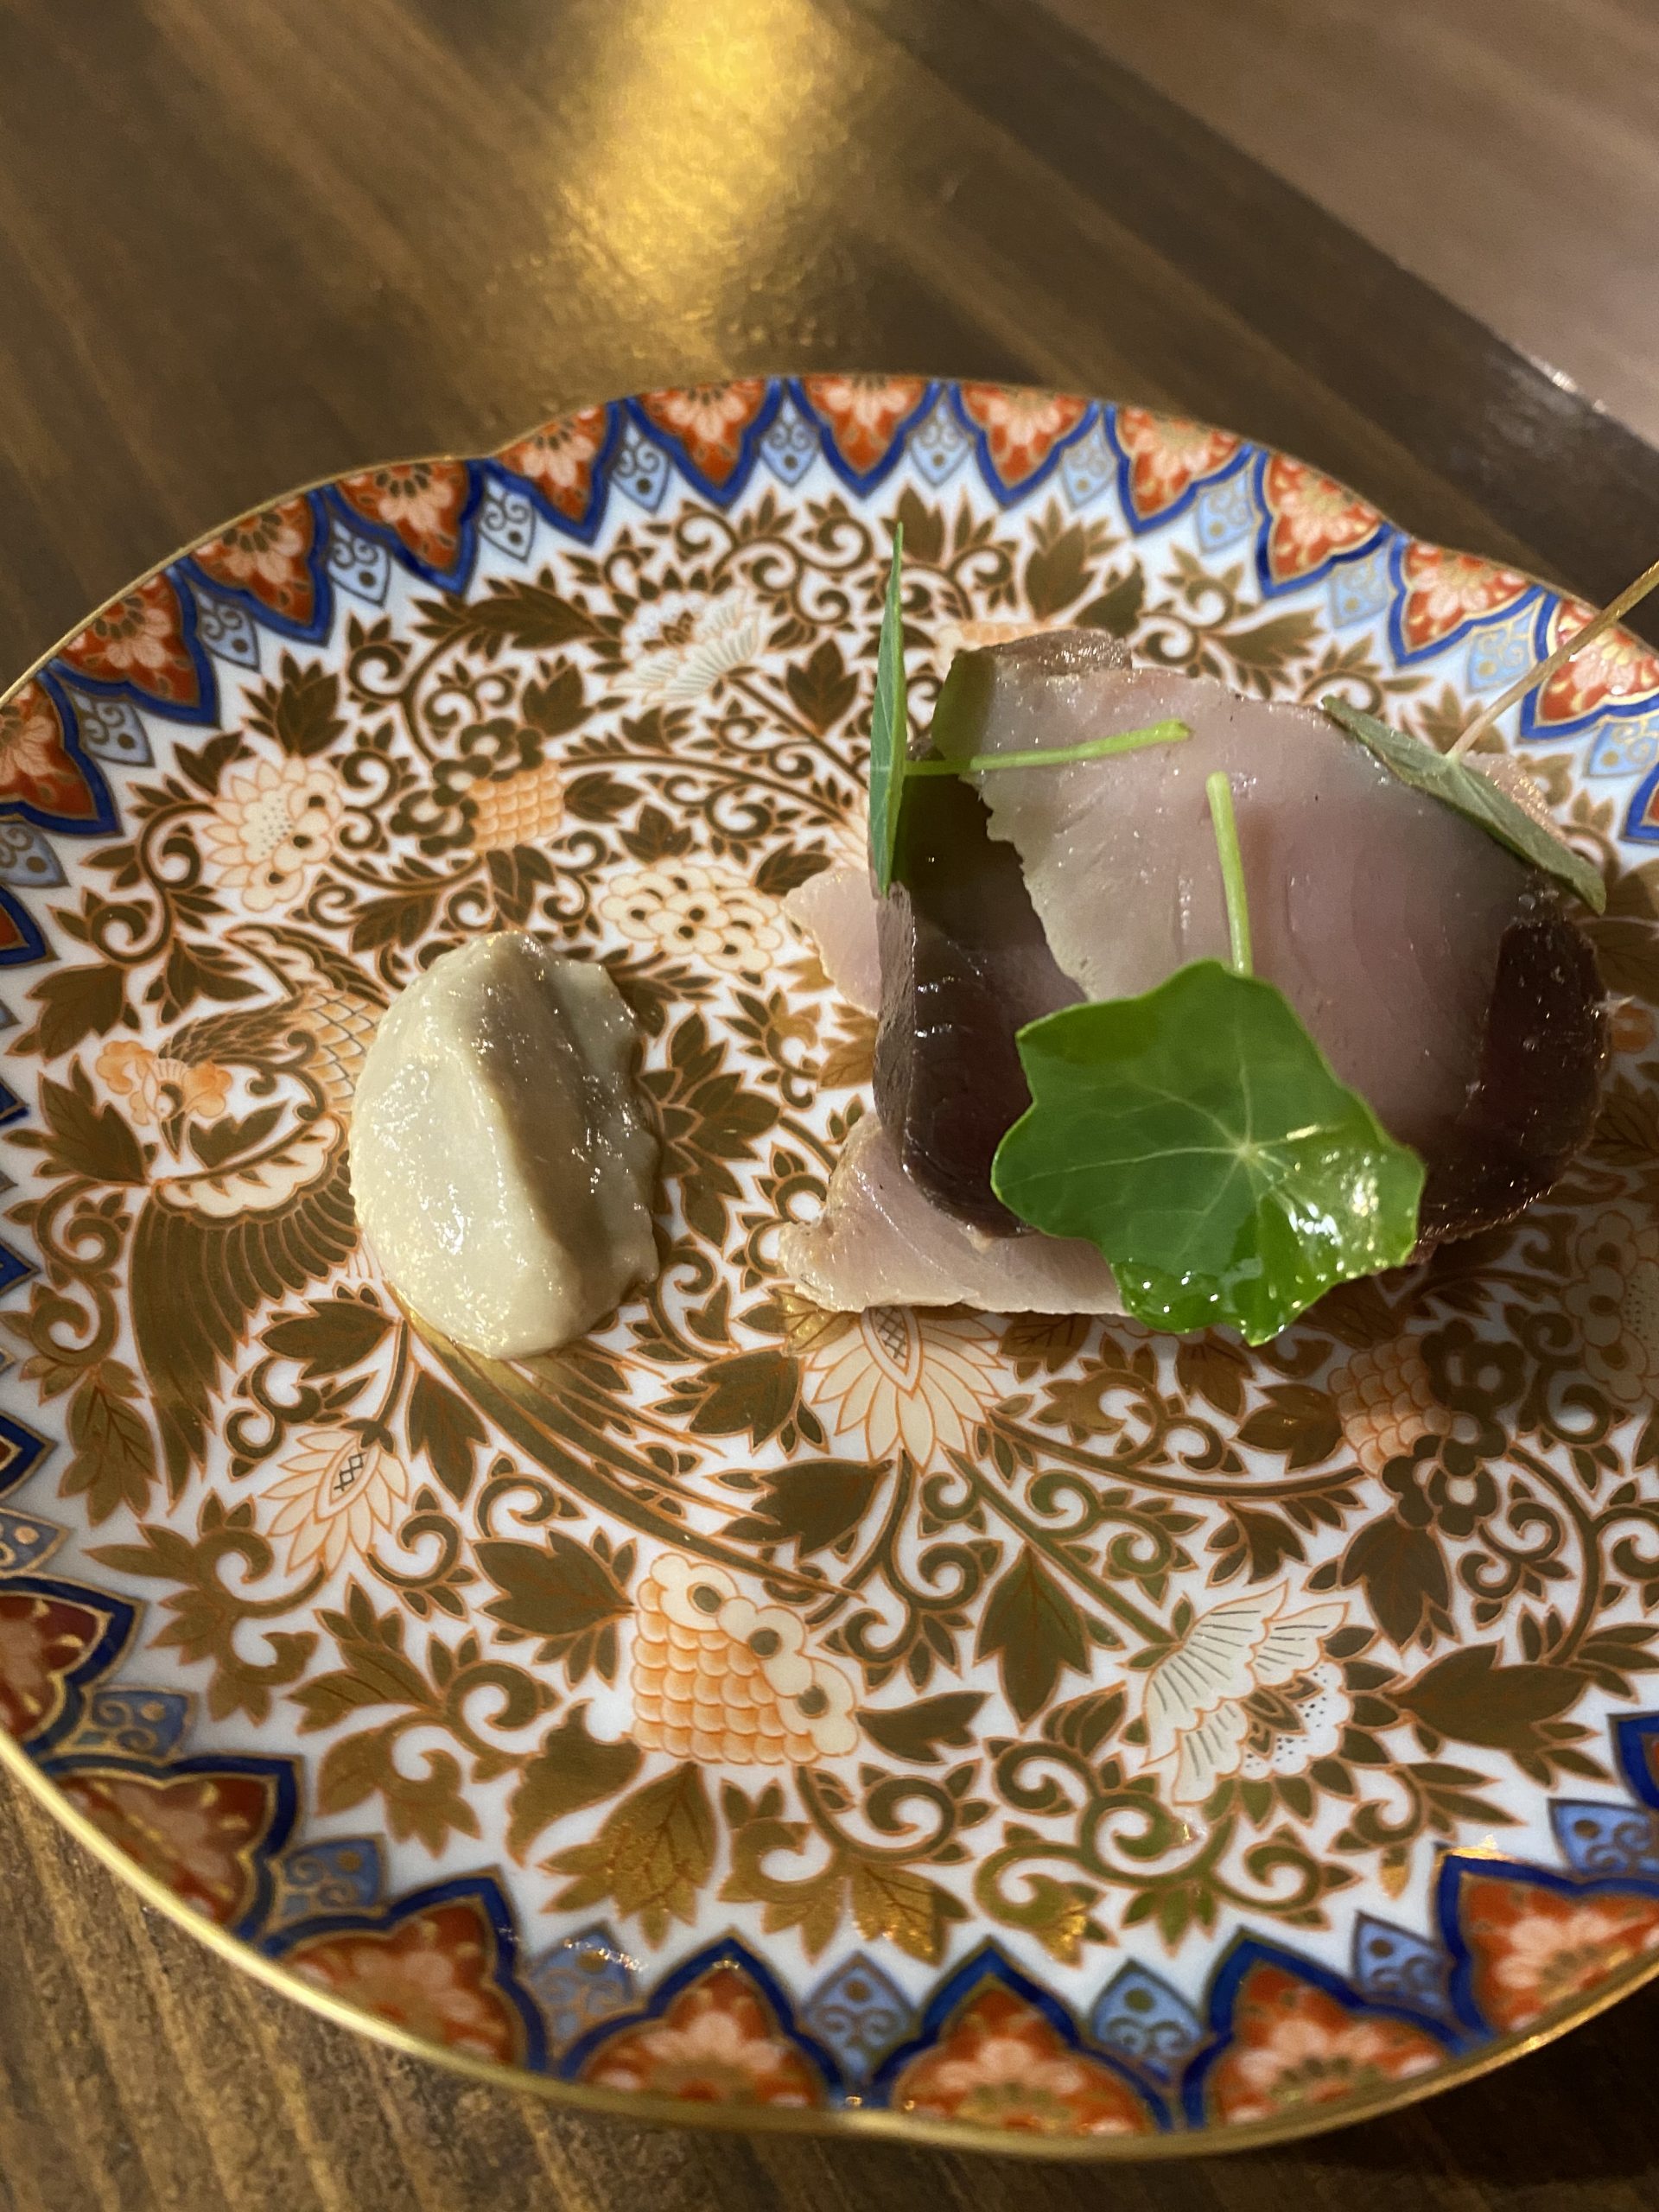 媛スマのカルパッチョ アンチョビのピューレ 海の恵み 食の底力 Japan 公式レシピサイト